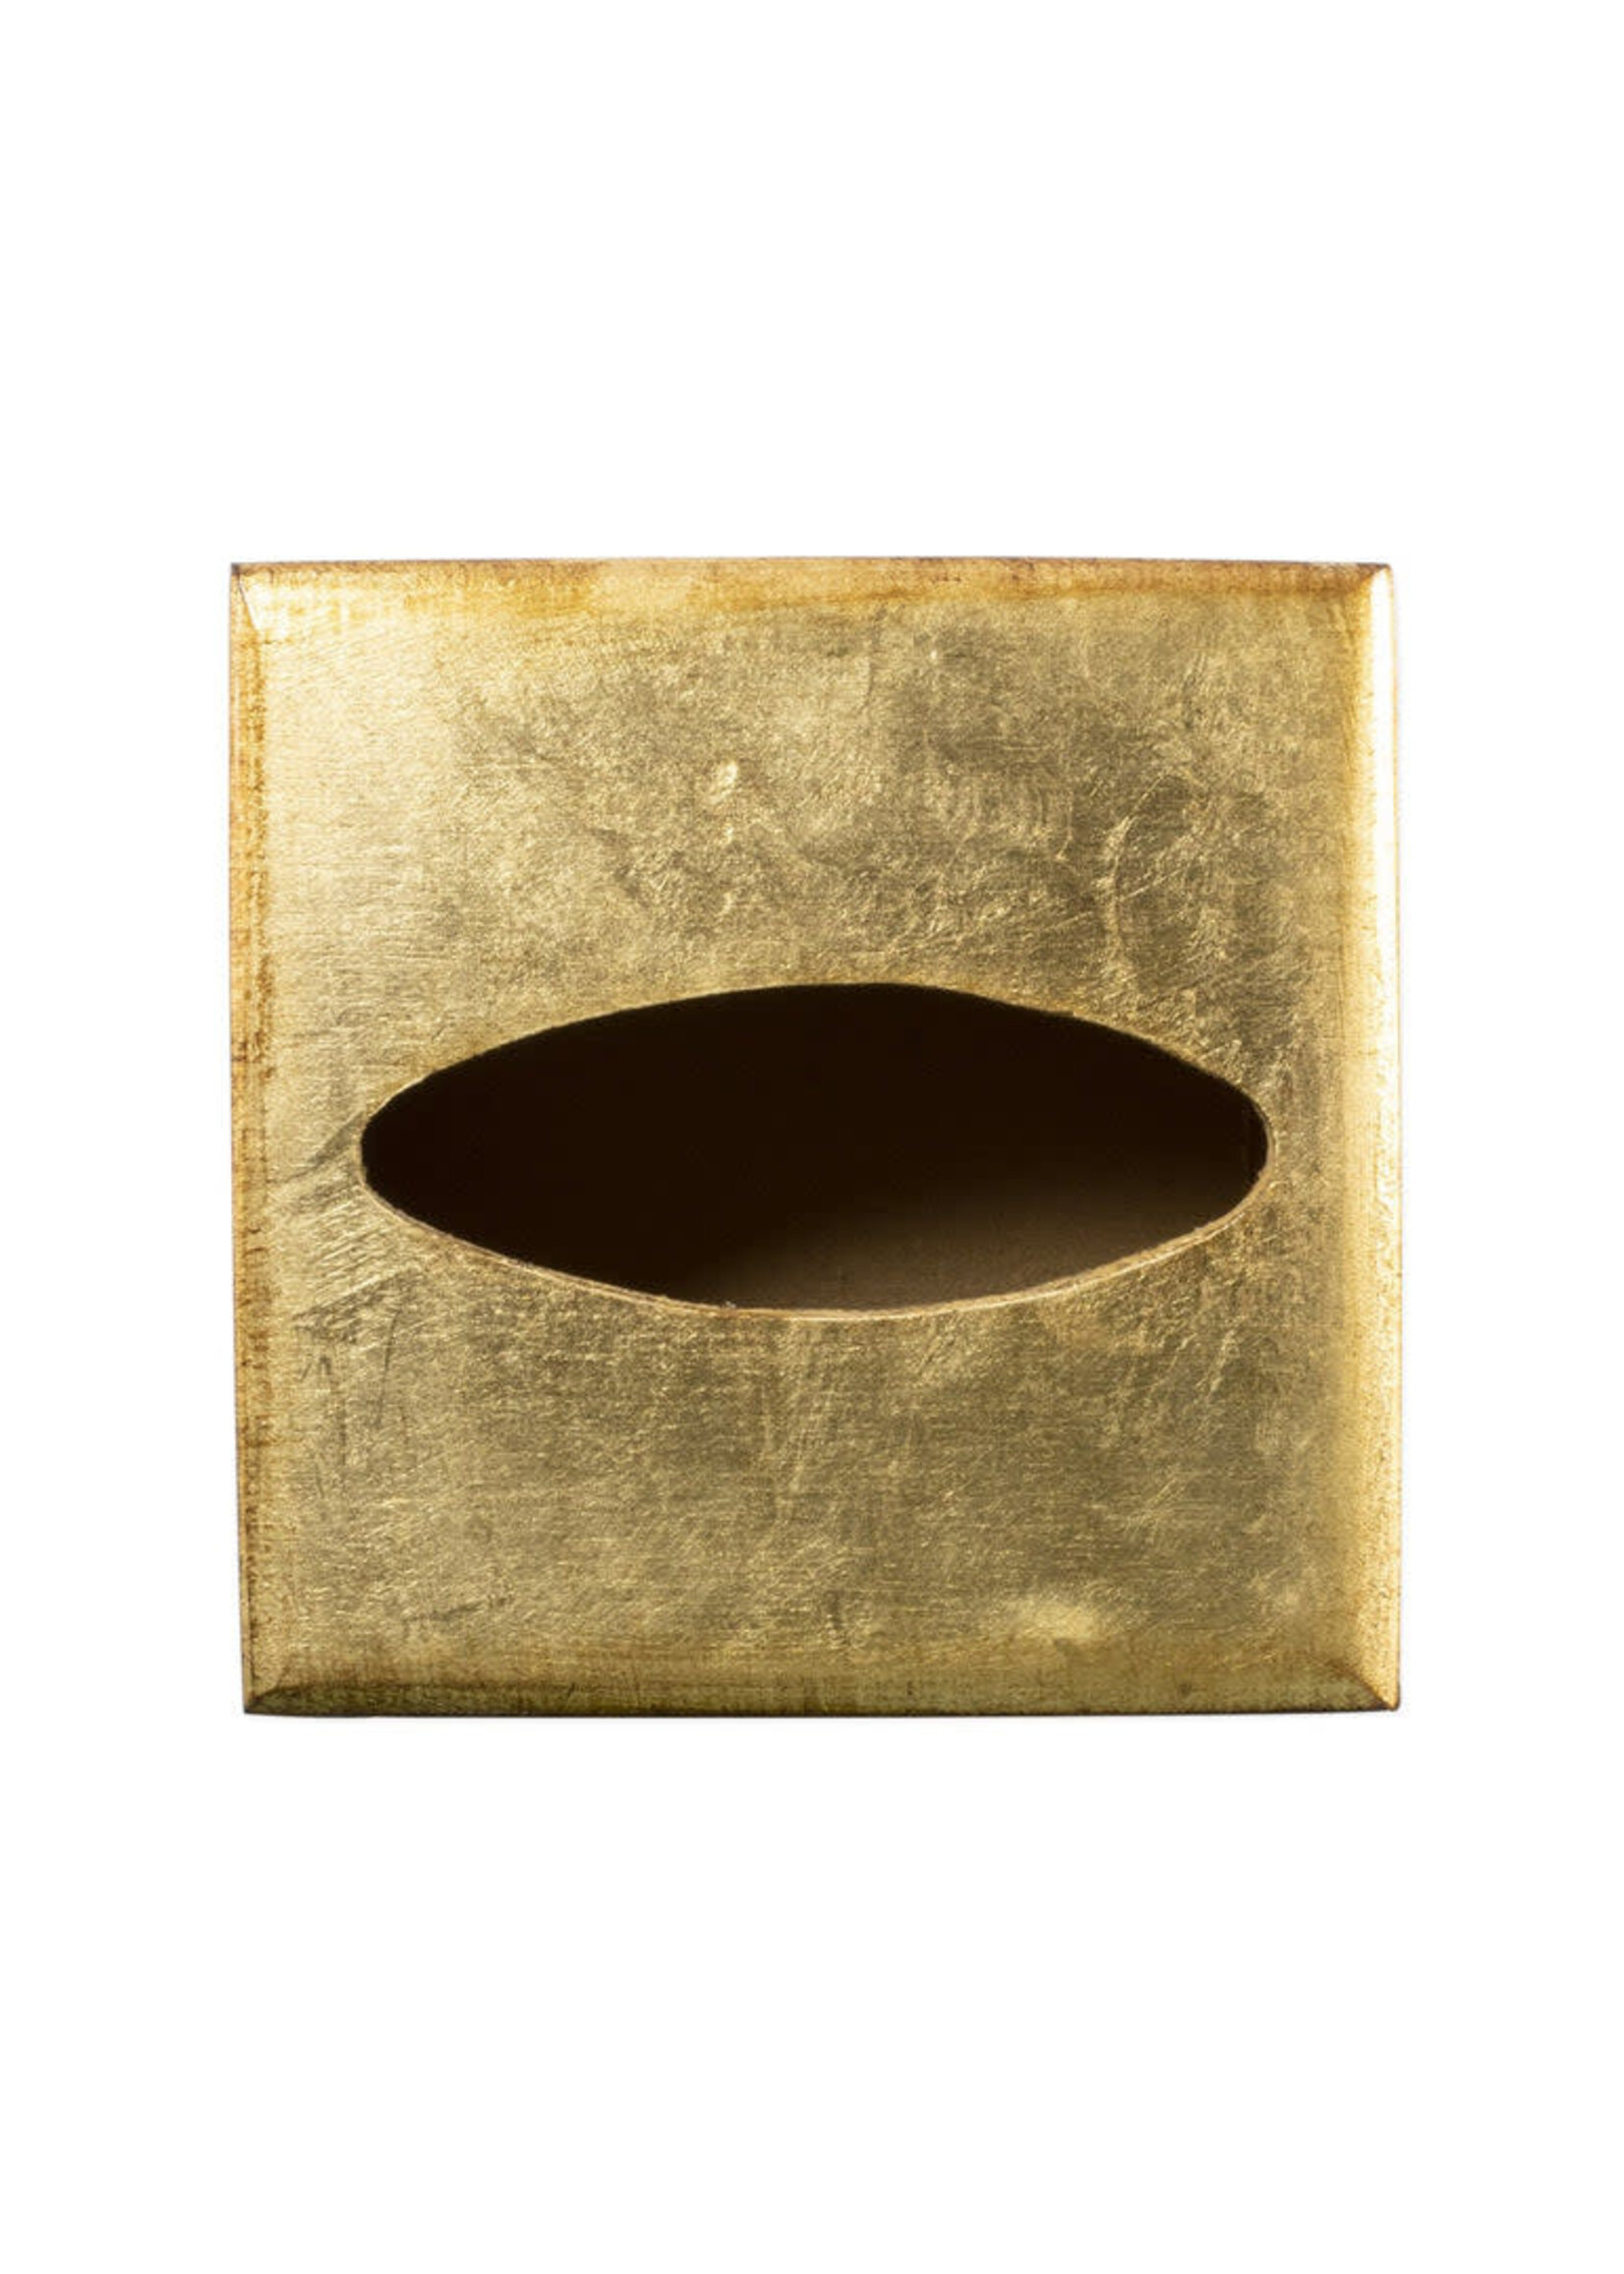 Vietri Florentine Gold Tissue Box